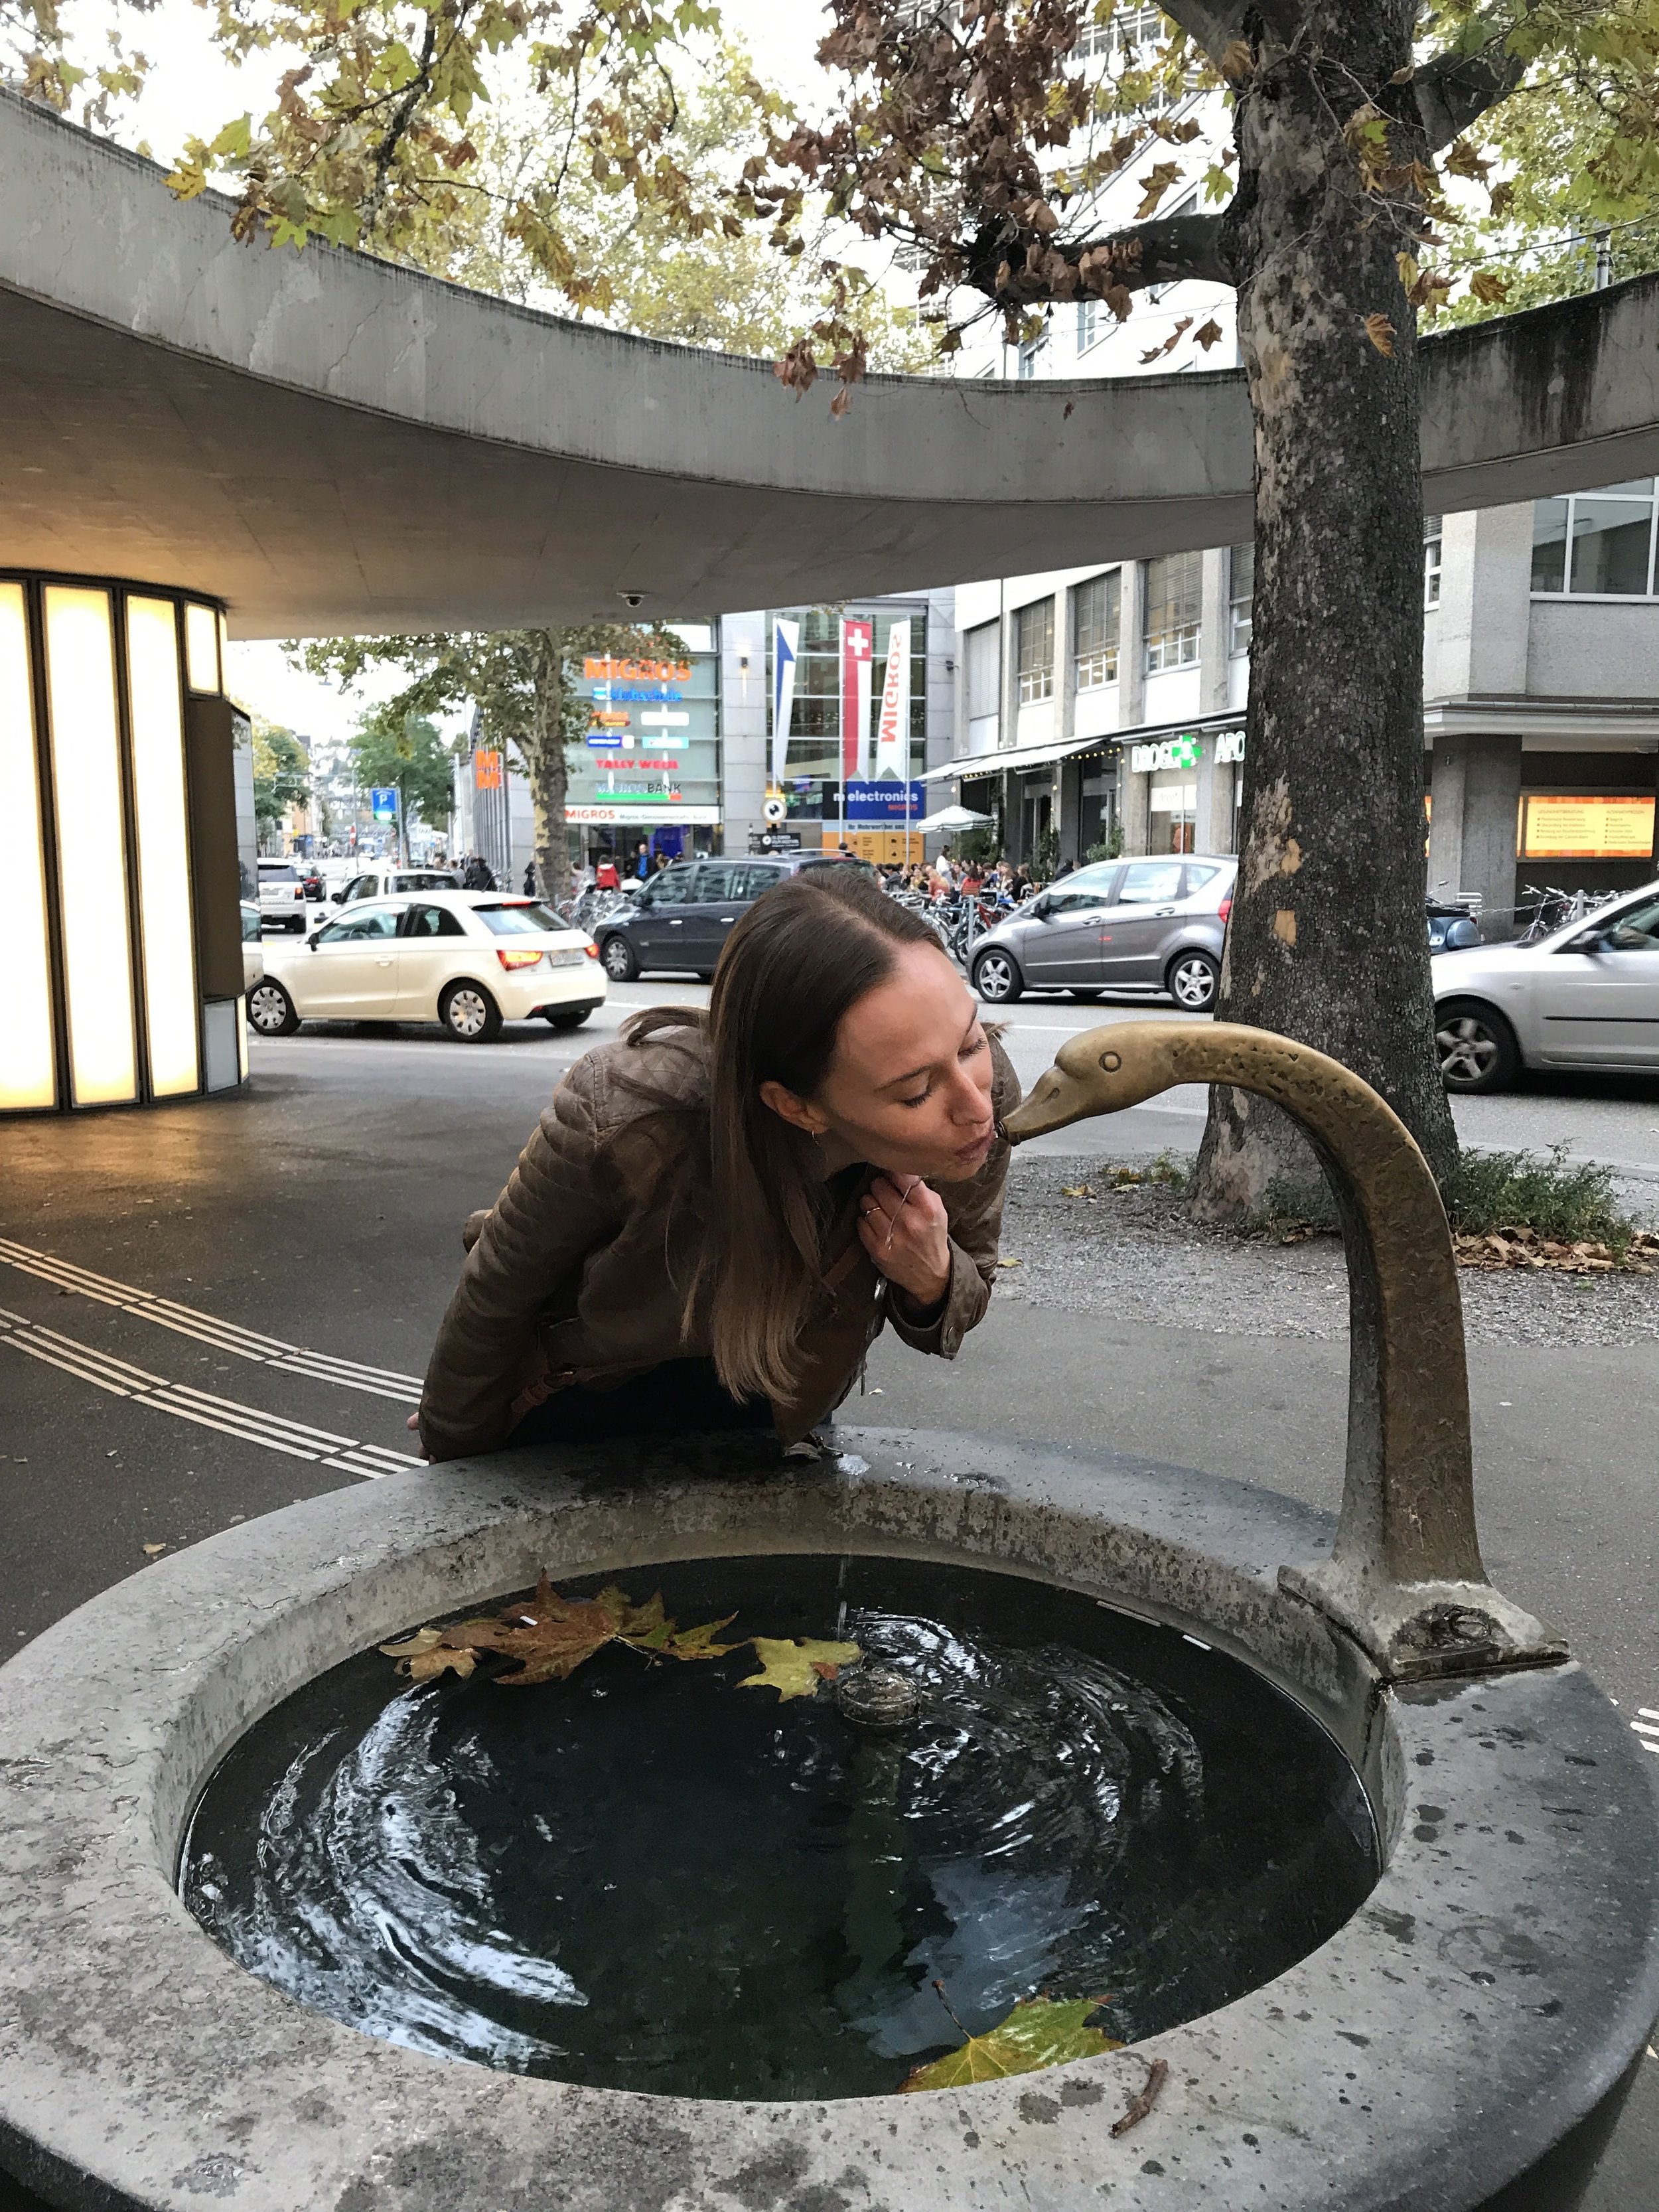 Public water fountain in Zurich